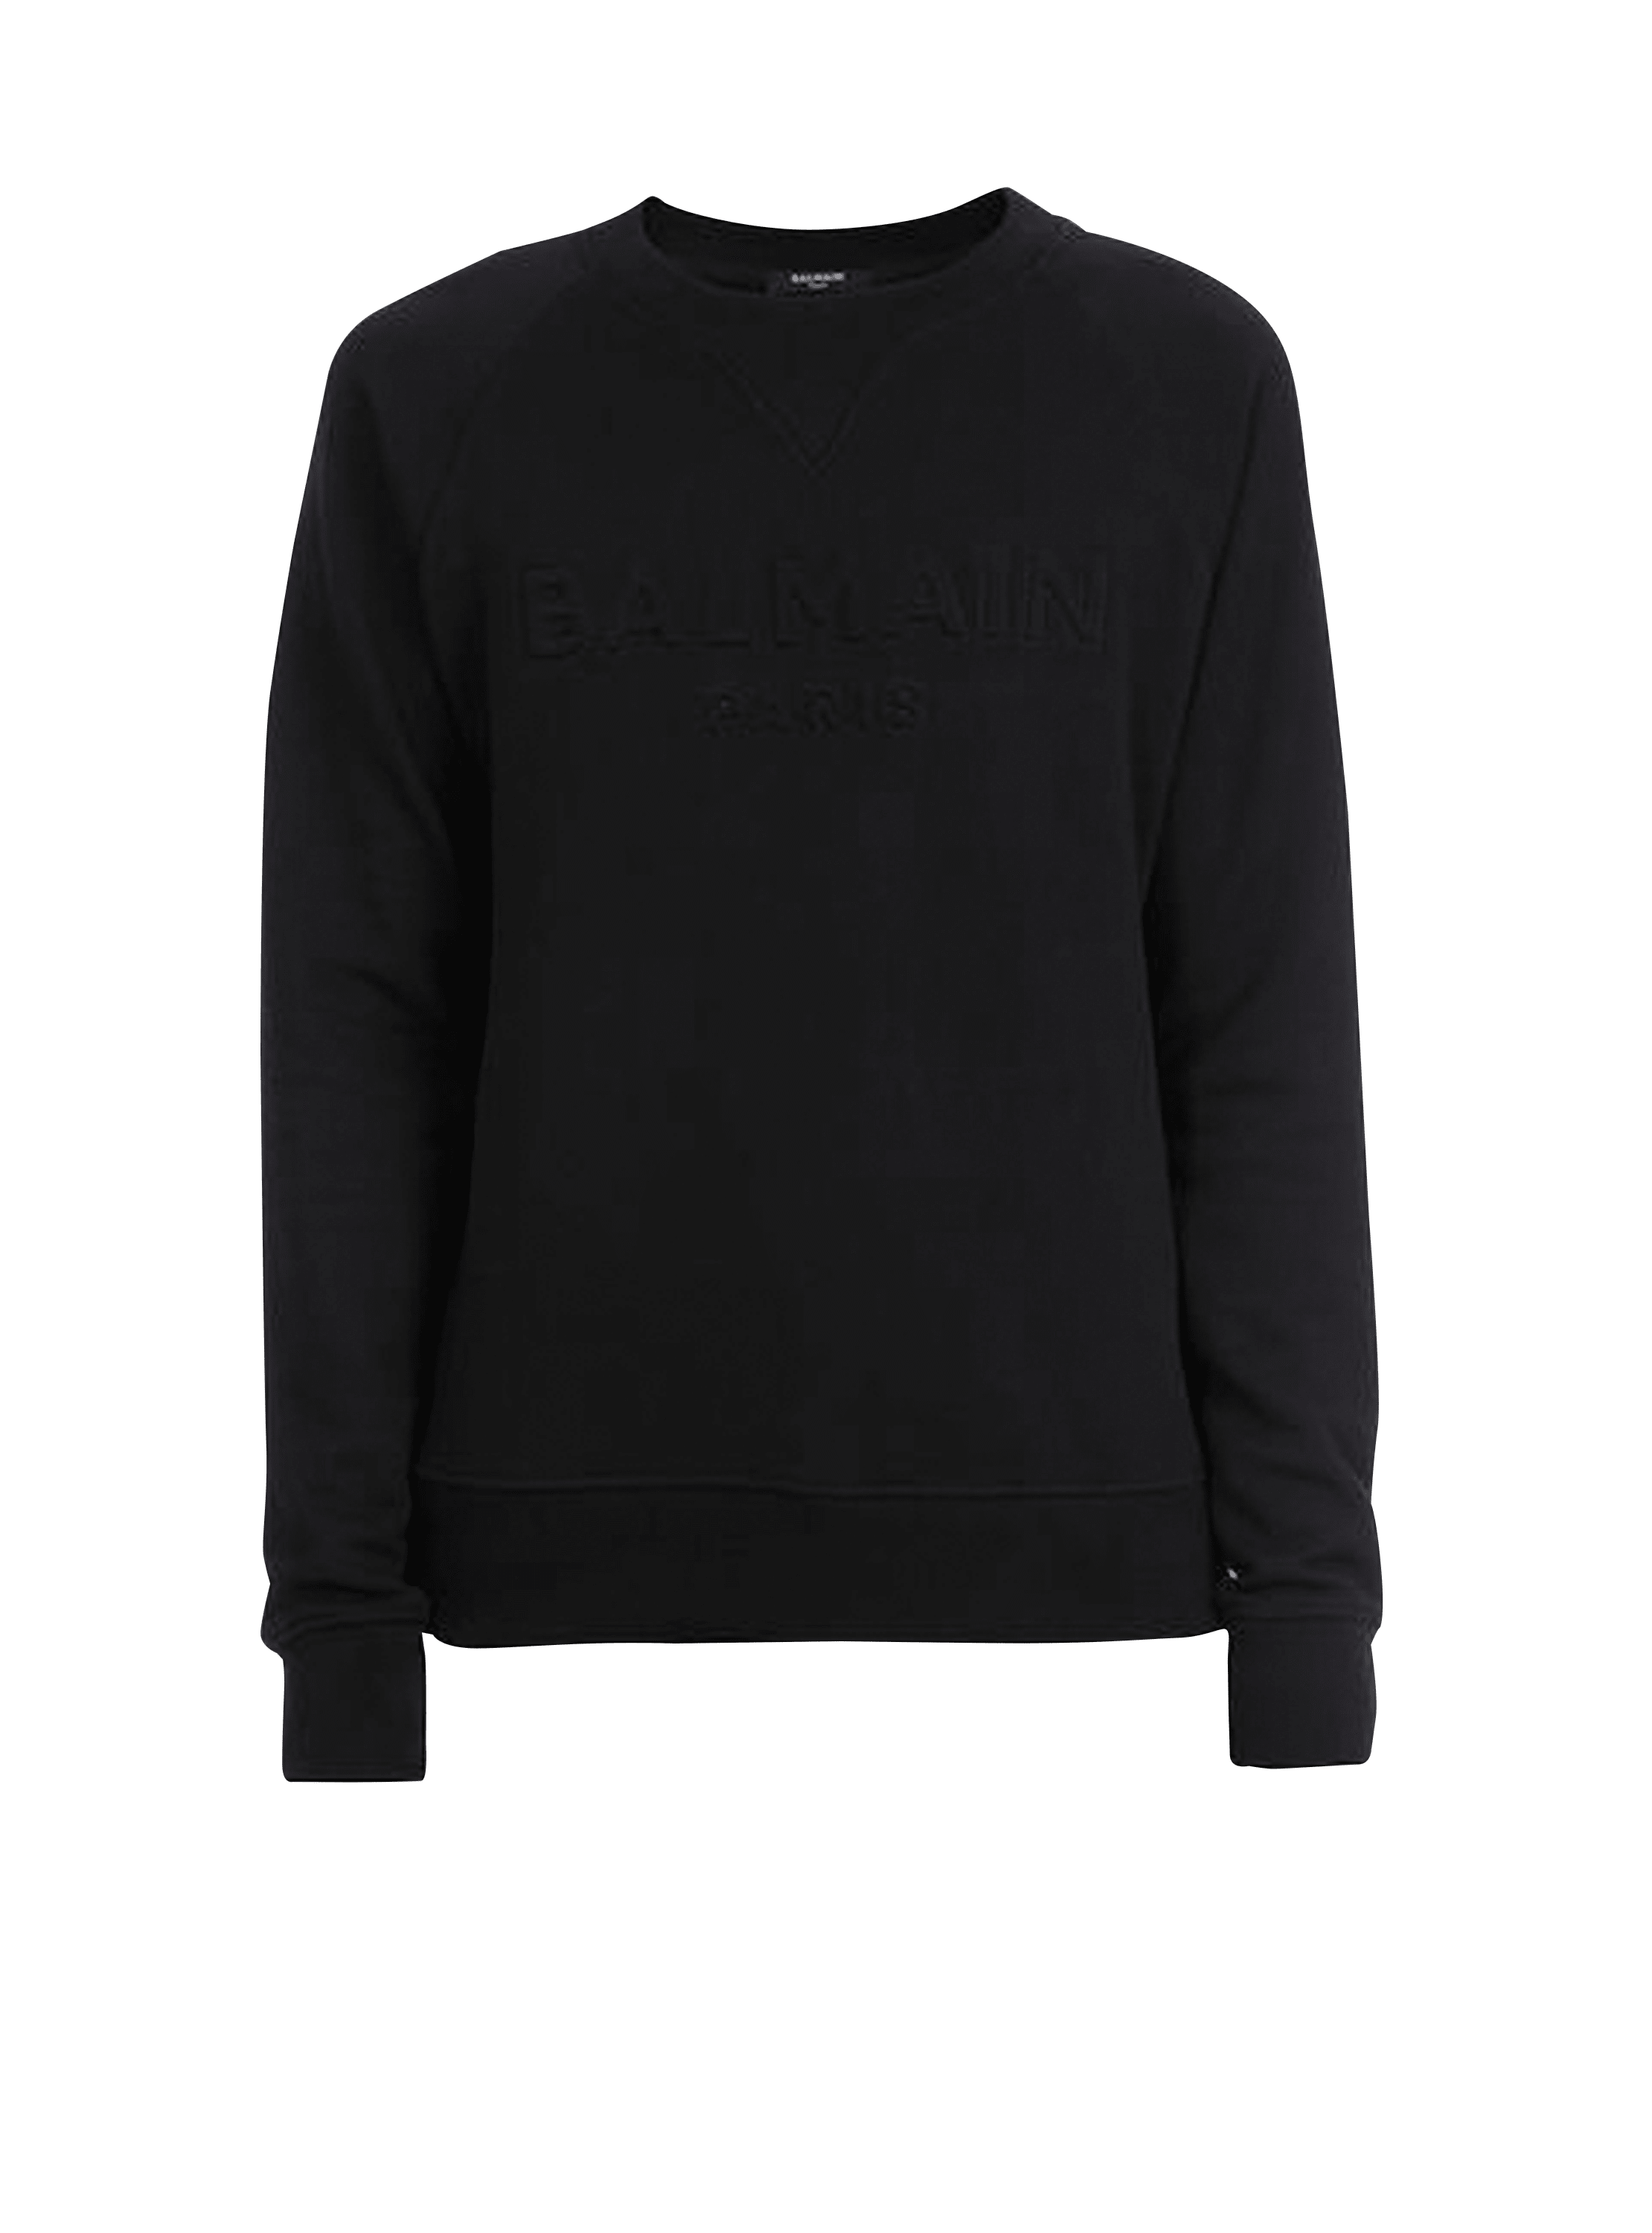 Sweatshirt aus schwarzer Baumwolle mit Prägung von Balmain, schwarz, hi-res